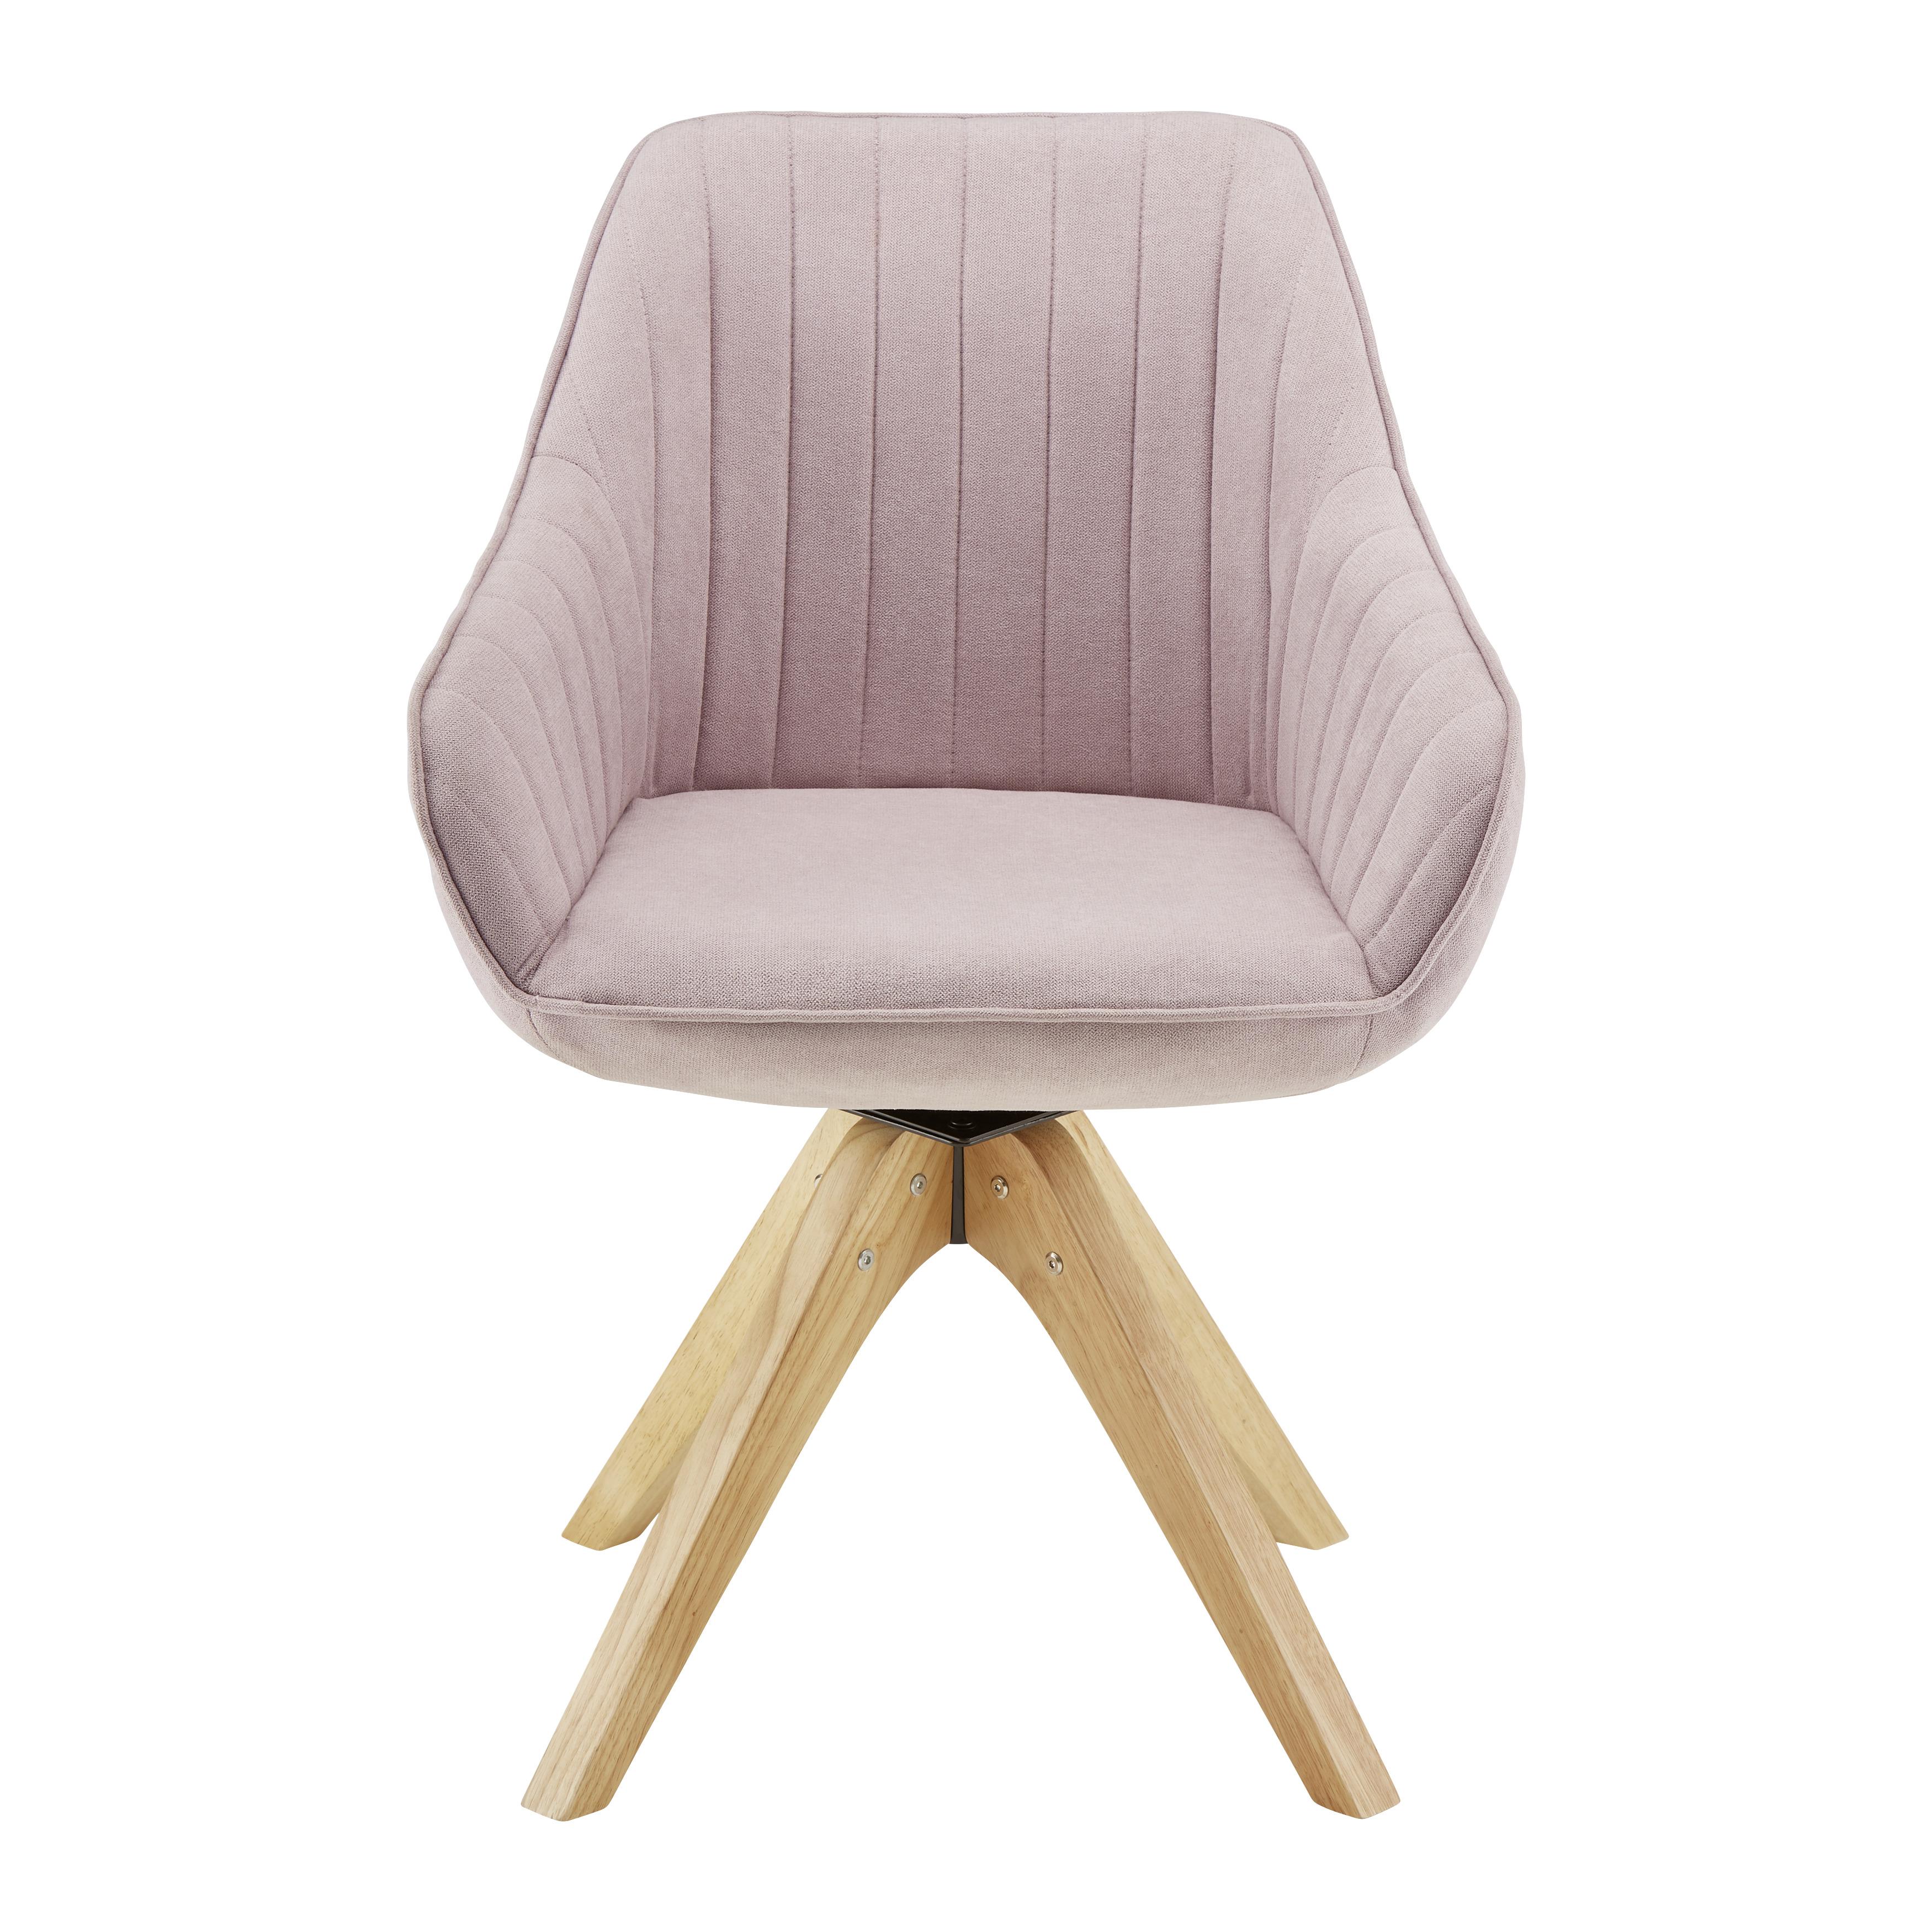 Jedálenská Stolička Leonie - farby dubu/ružová, Moderný, drevo/textil (60/84/61cm) - Modern Living